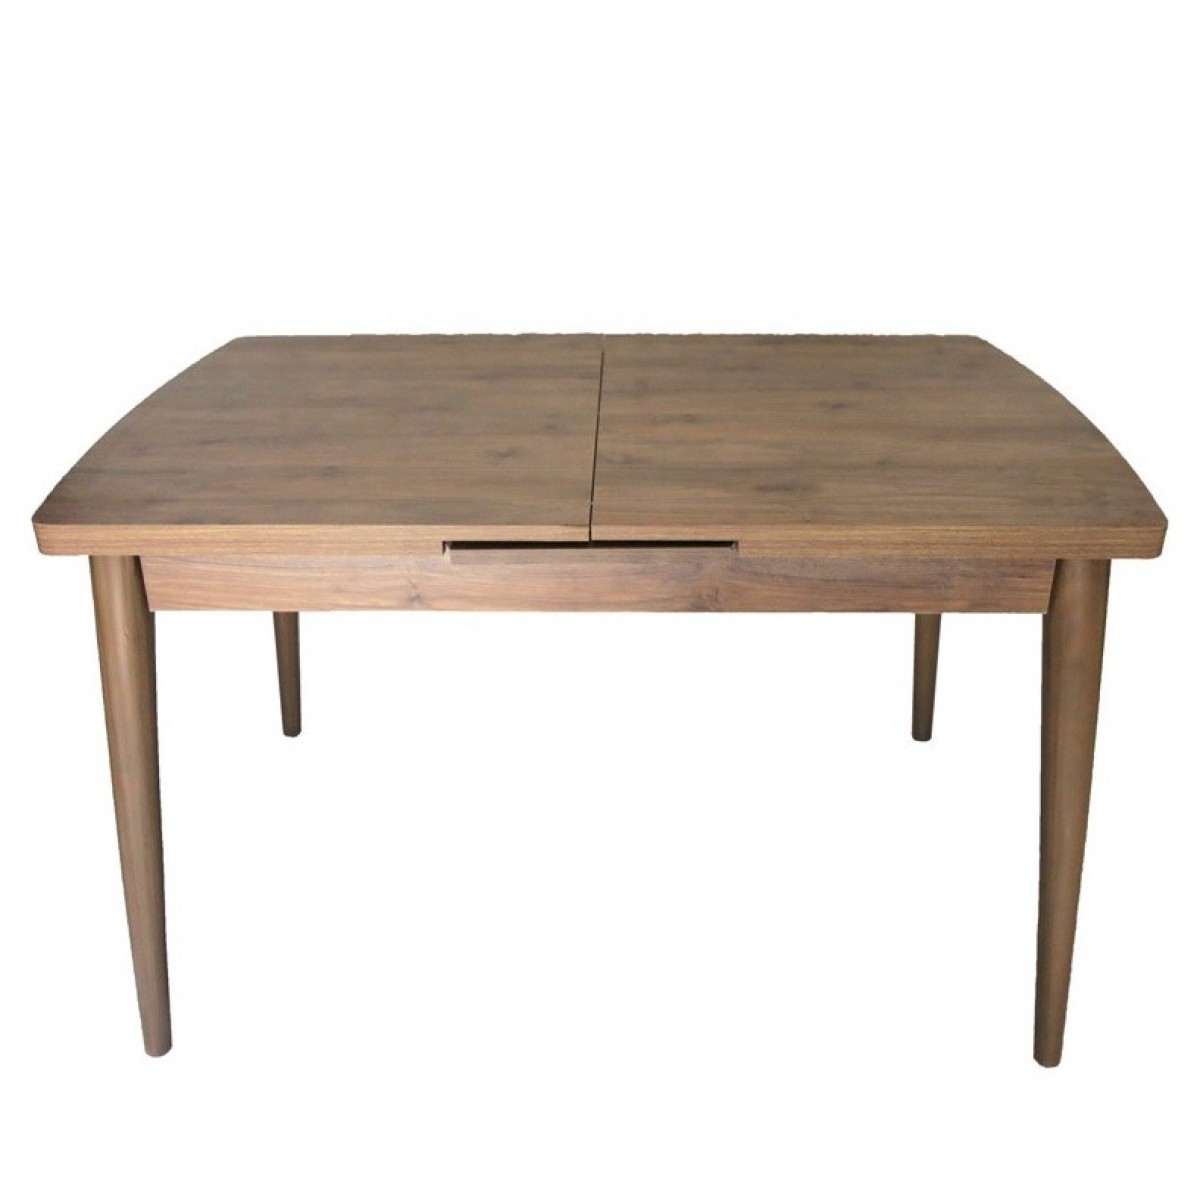 Τραπέζι "JOY" ορθογώνιο ανοιγόμενο από ξύλο/mdf σε χρώμα καρυδί 130x80x79